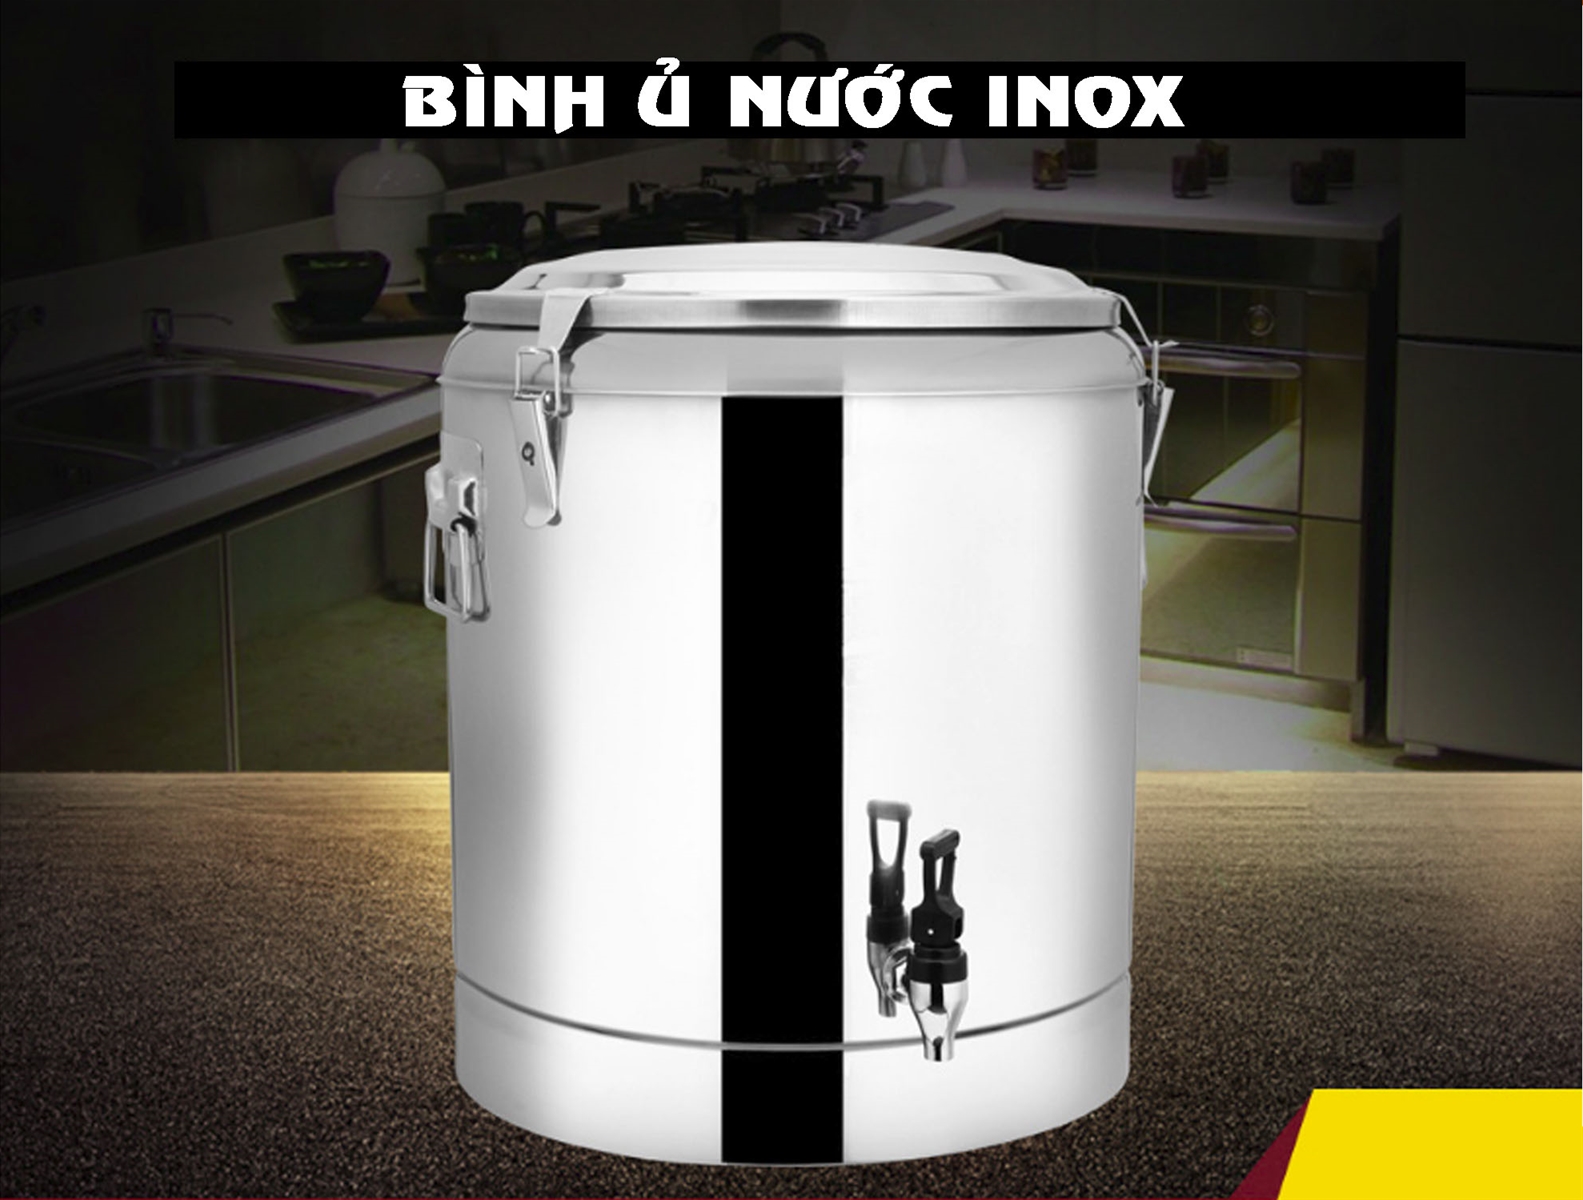 Bình ủ nước inox 10L, 20L, 30L, 40L, 50L, 60L, 70L, 80L, 100L.